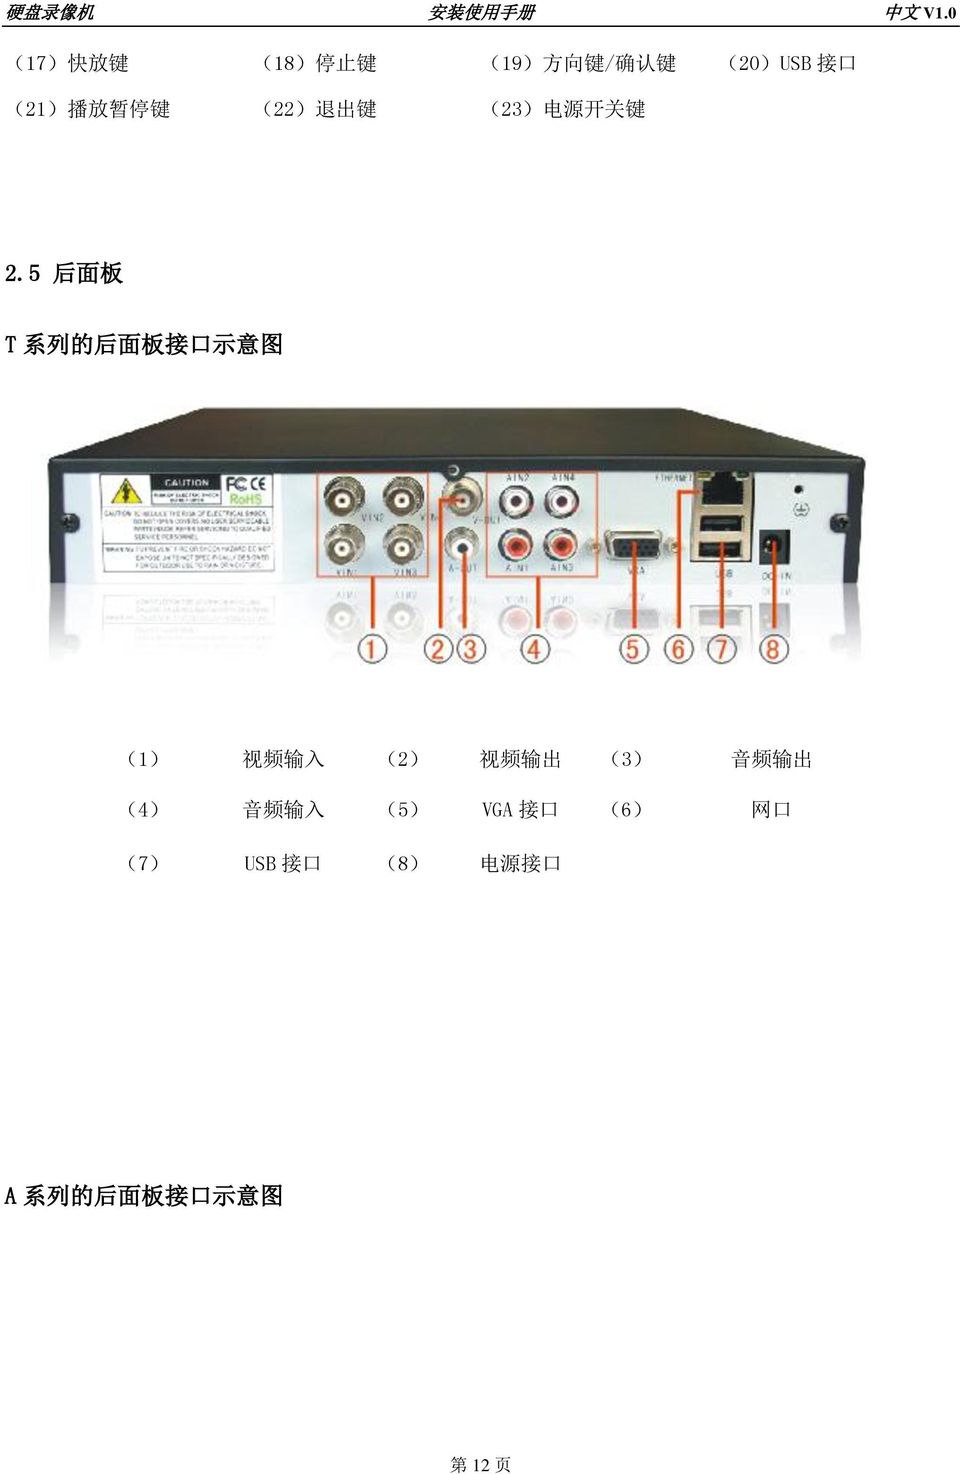 5 后 面 板 T 系 列 的 后 面 板 接 口 示 意 图 (1) 视 频 输 入 (2) 视 频 输 出 (3) 音